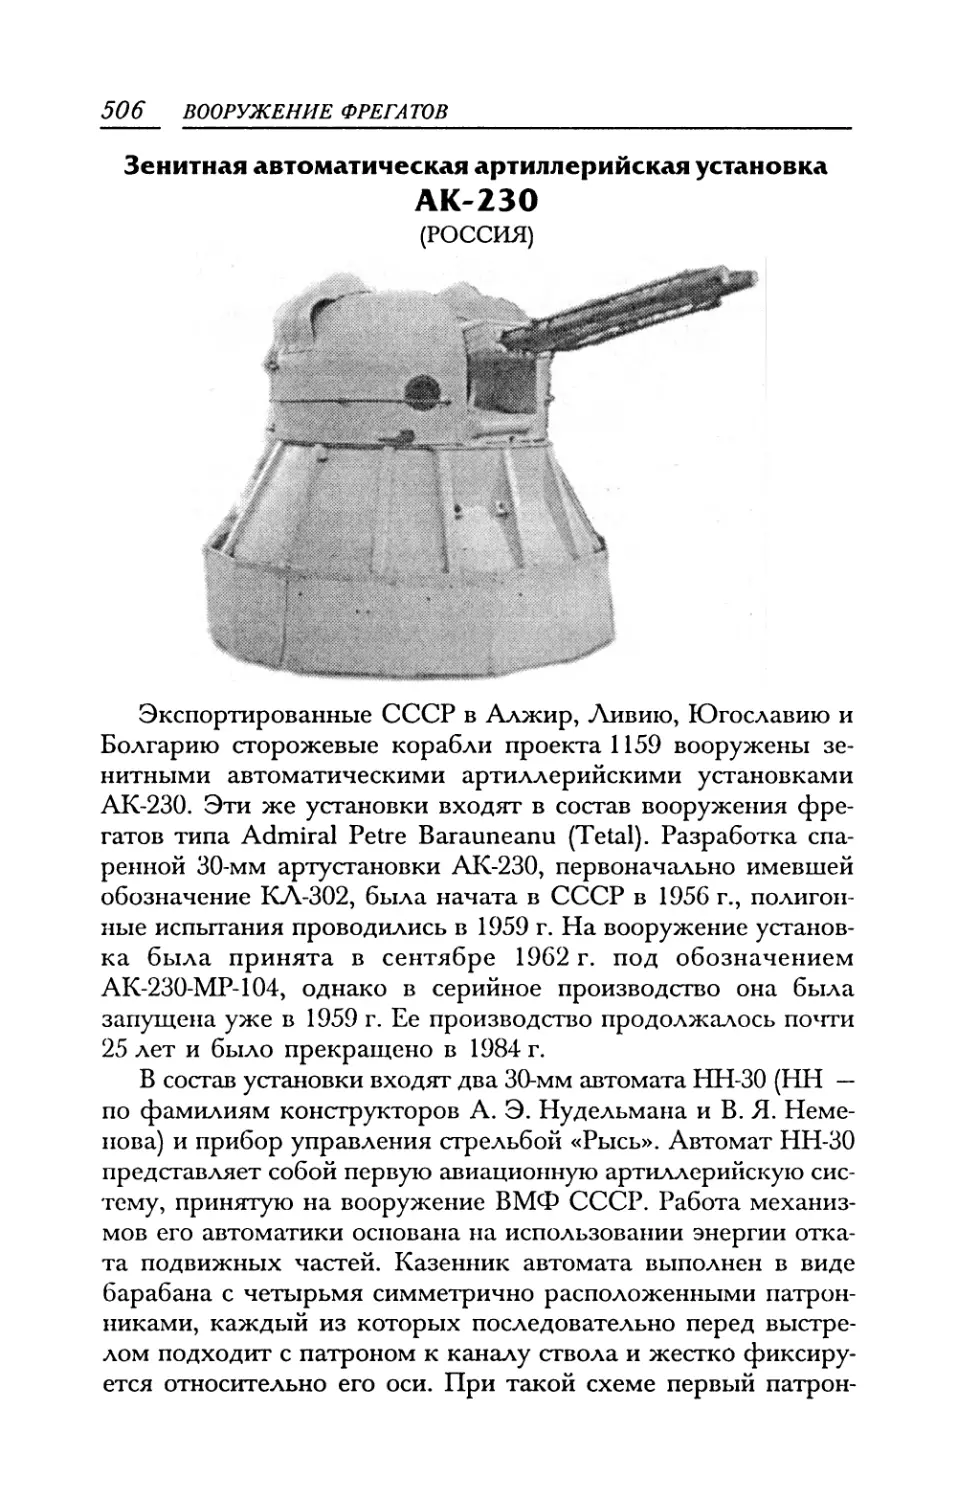 Зенитная автоматическая артиллерийская установка АК-230